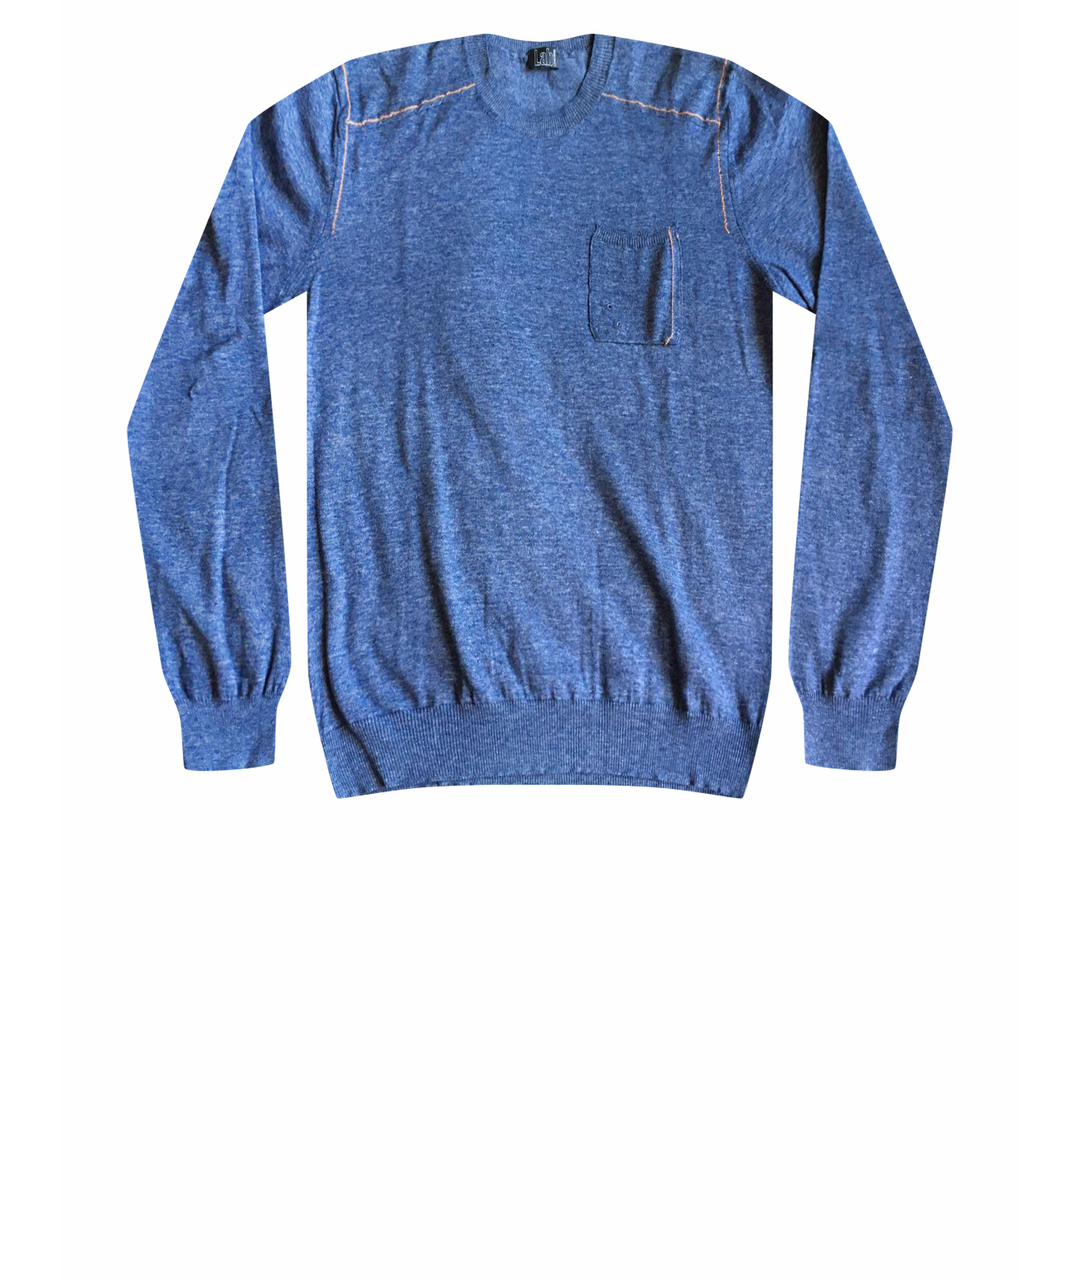 PAL ZILERI Синий хлопковый джемпер / свитер, фото 1